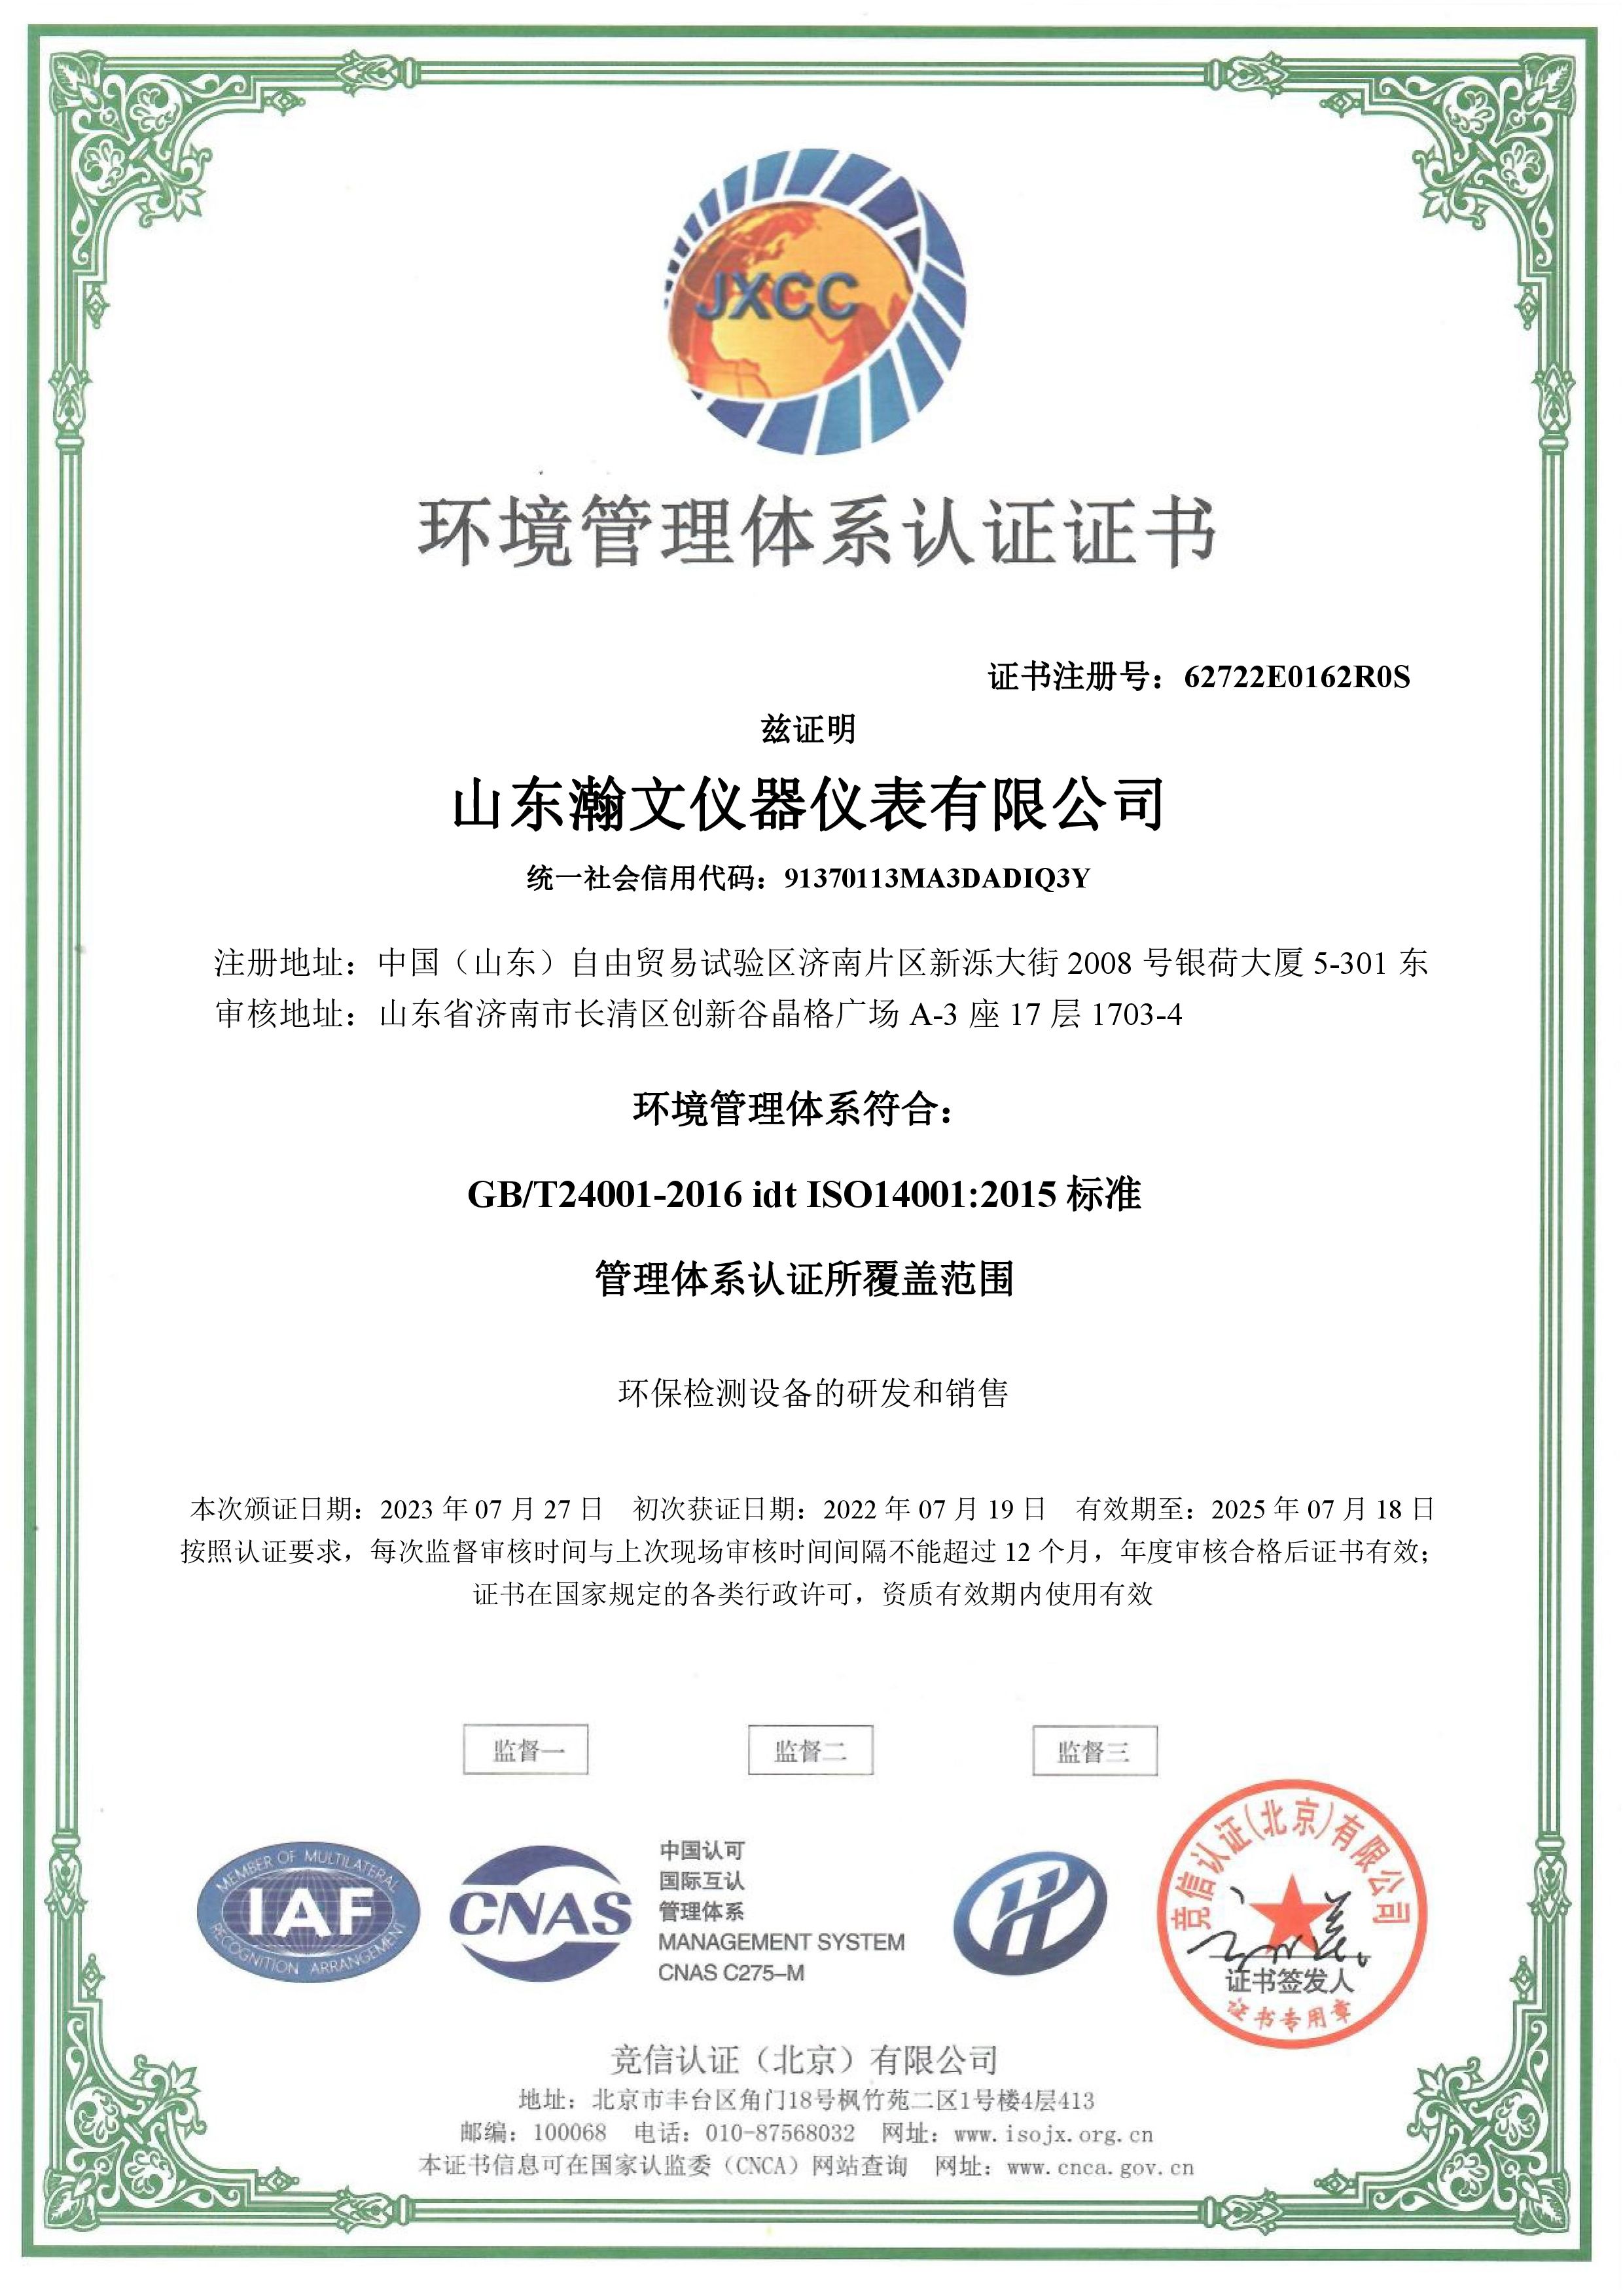 荣获ISO14001环境管理体系认证证书